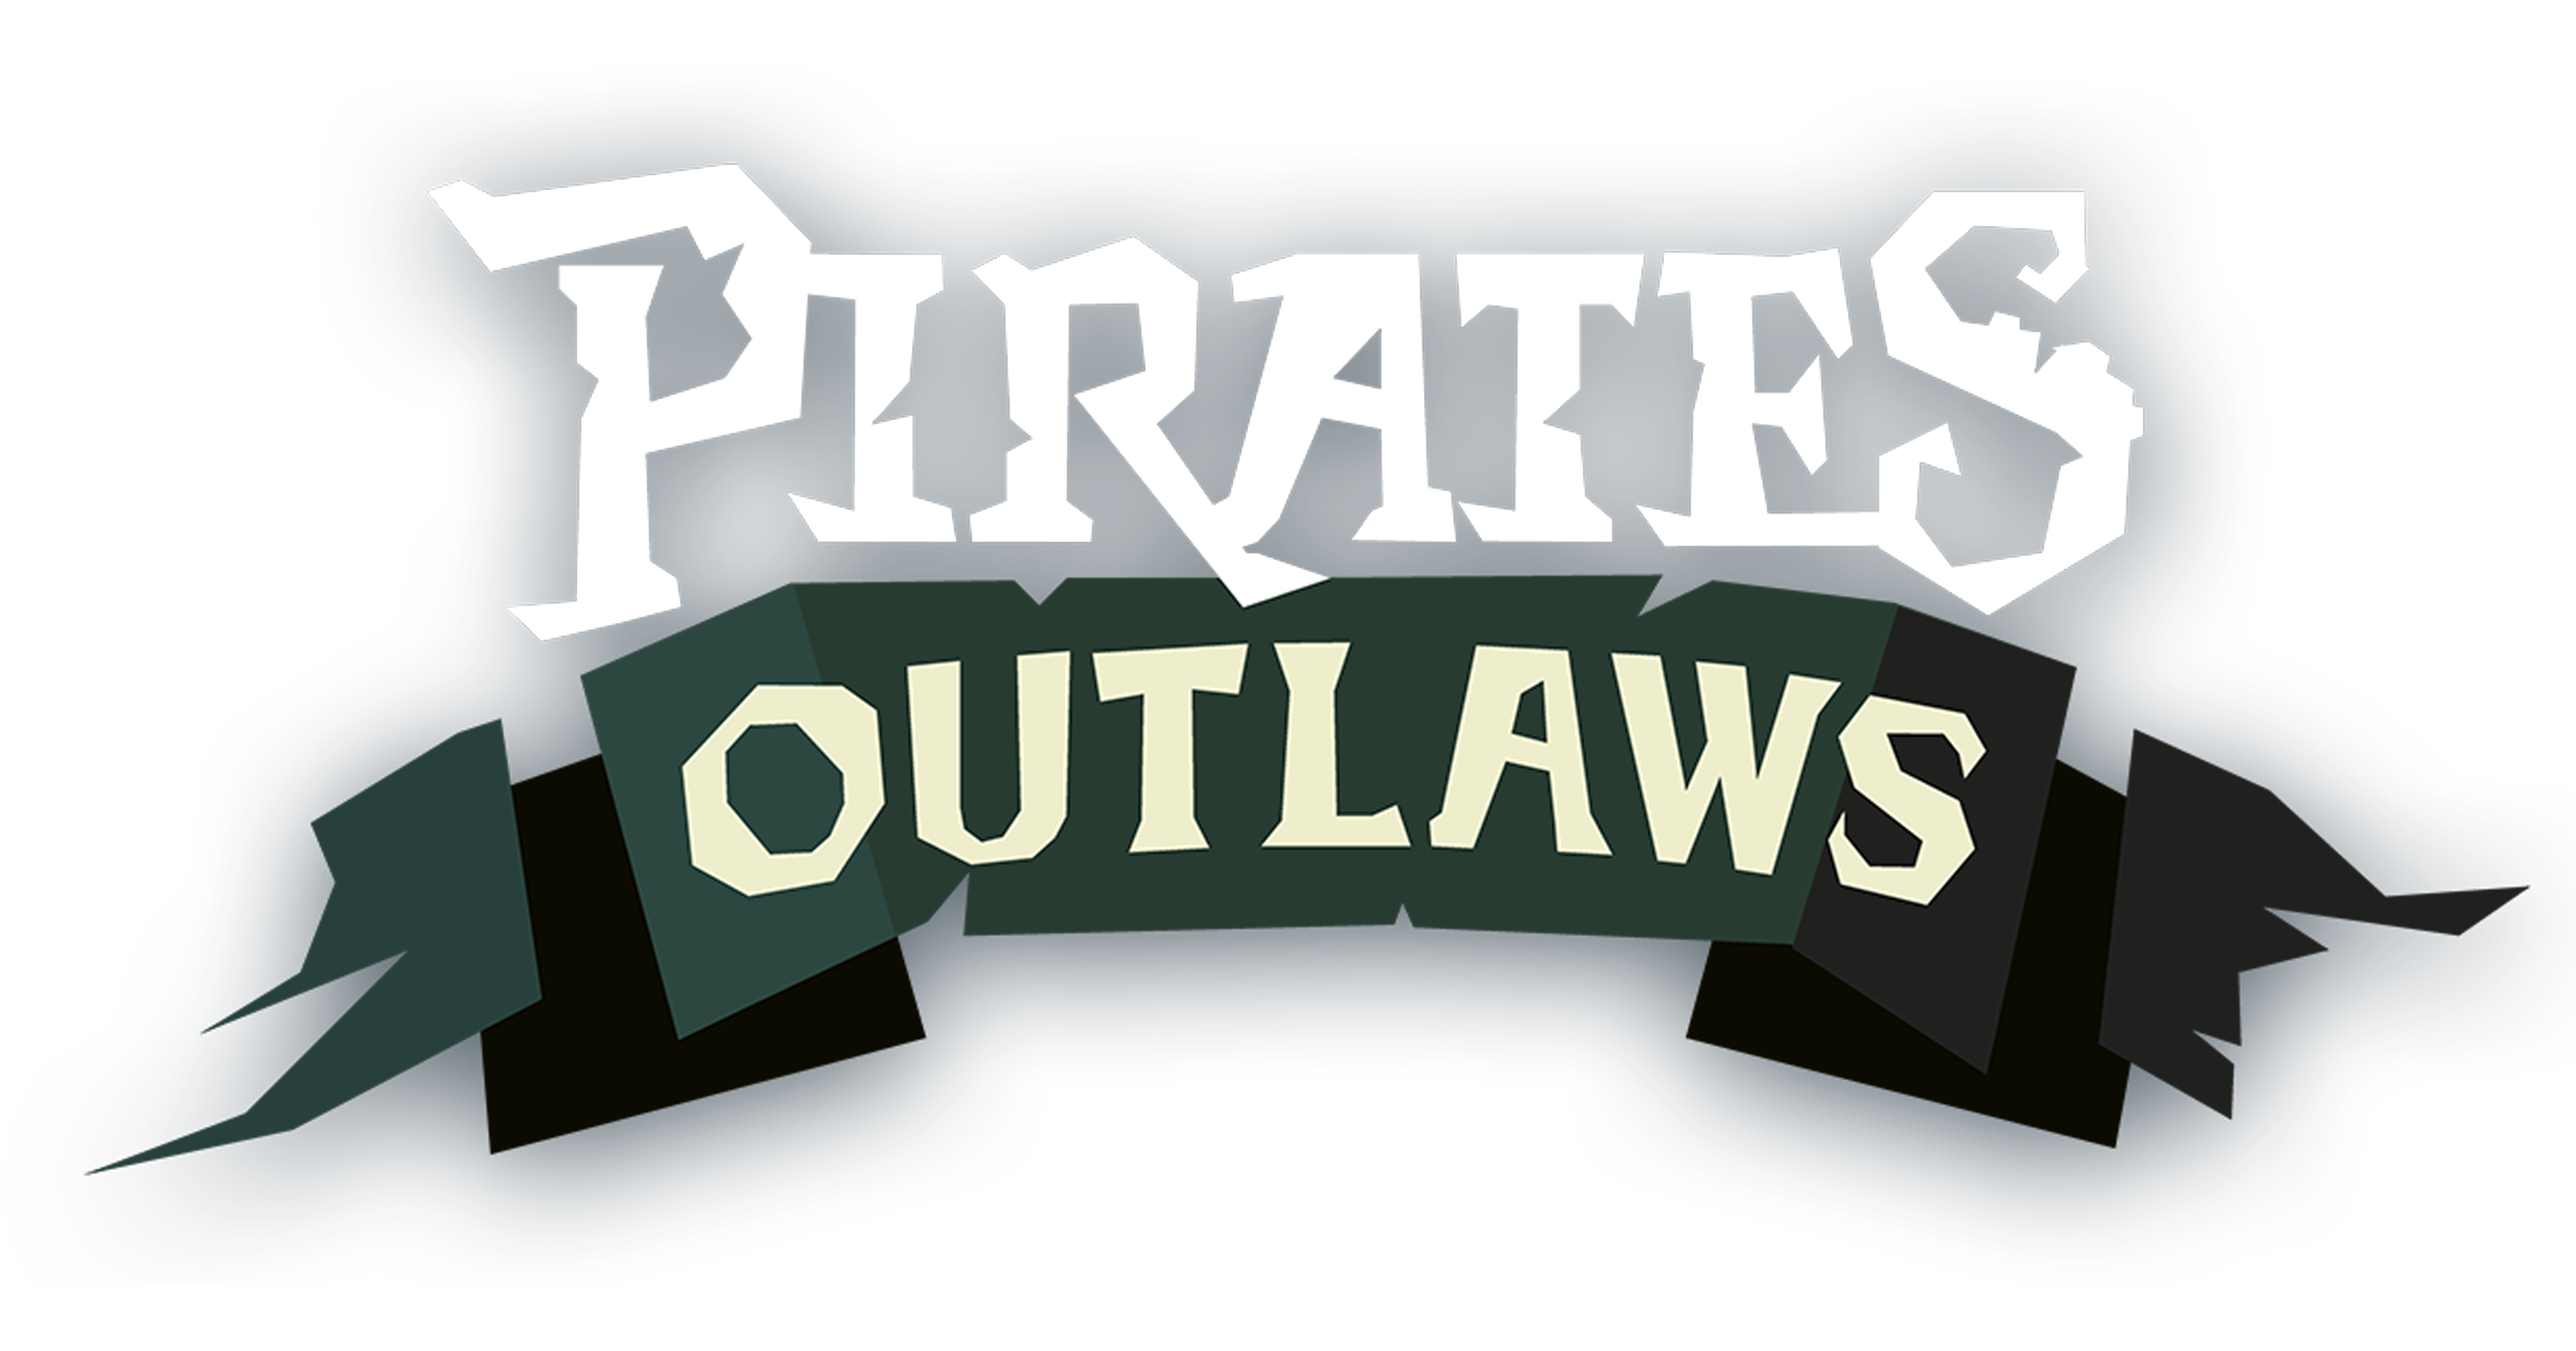 Pirates Outlaw